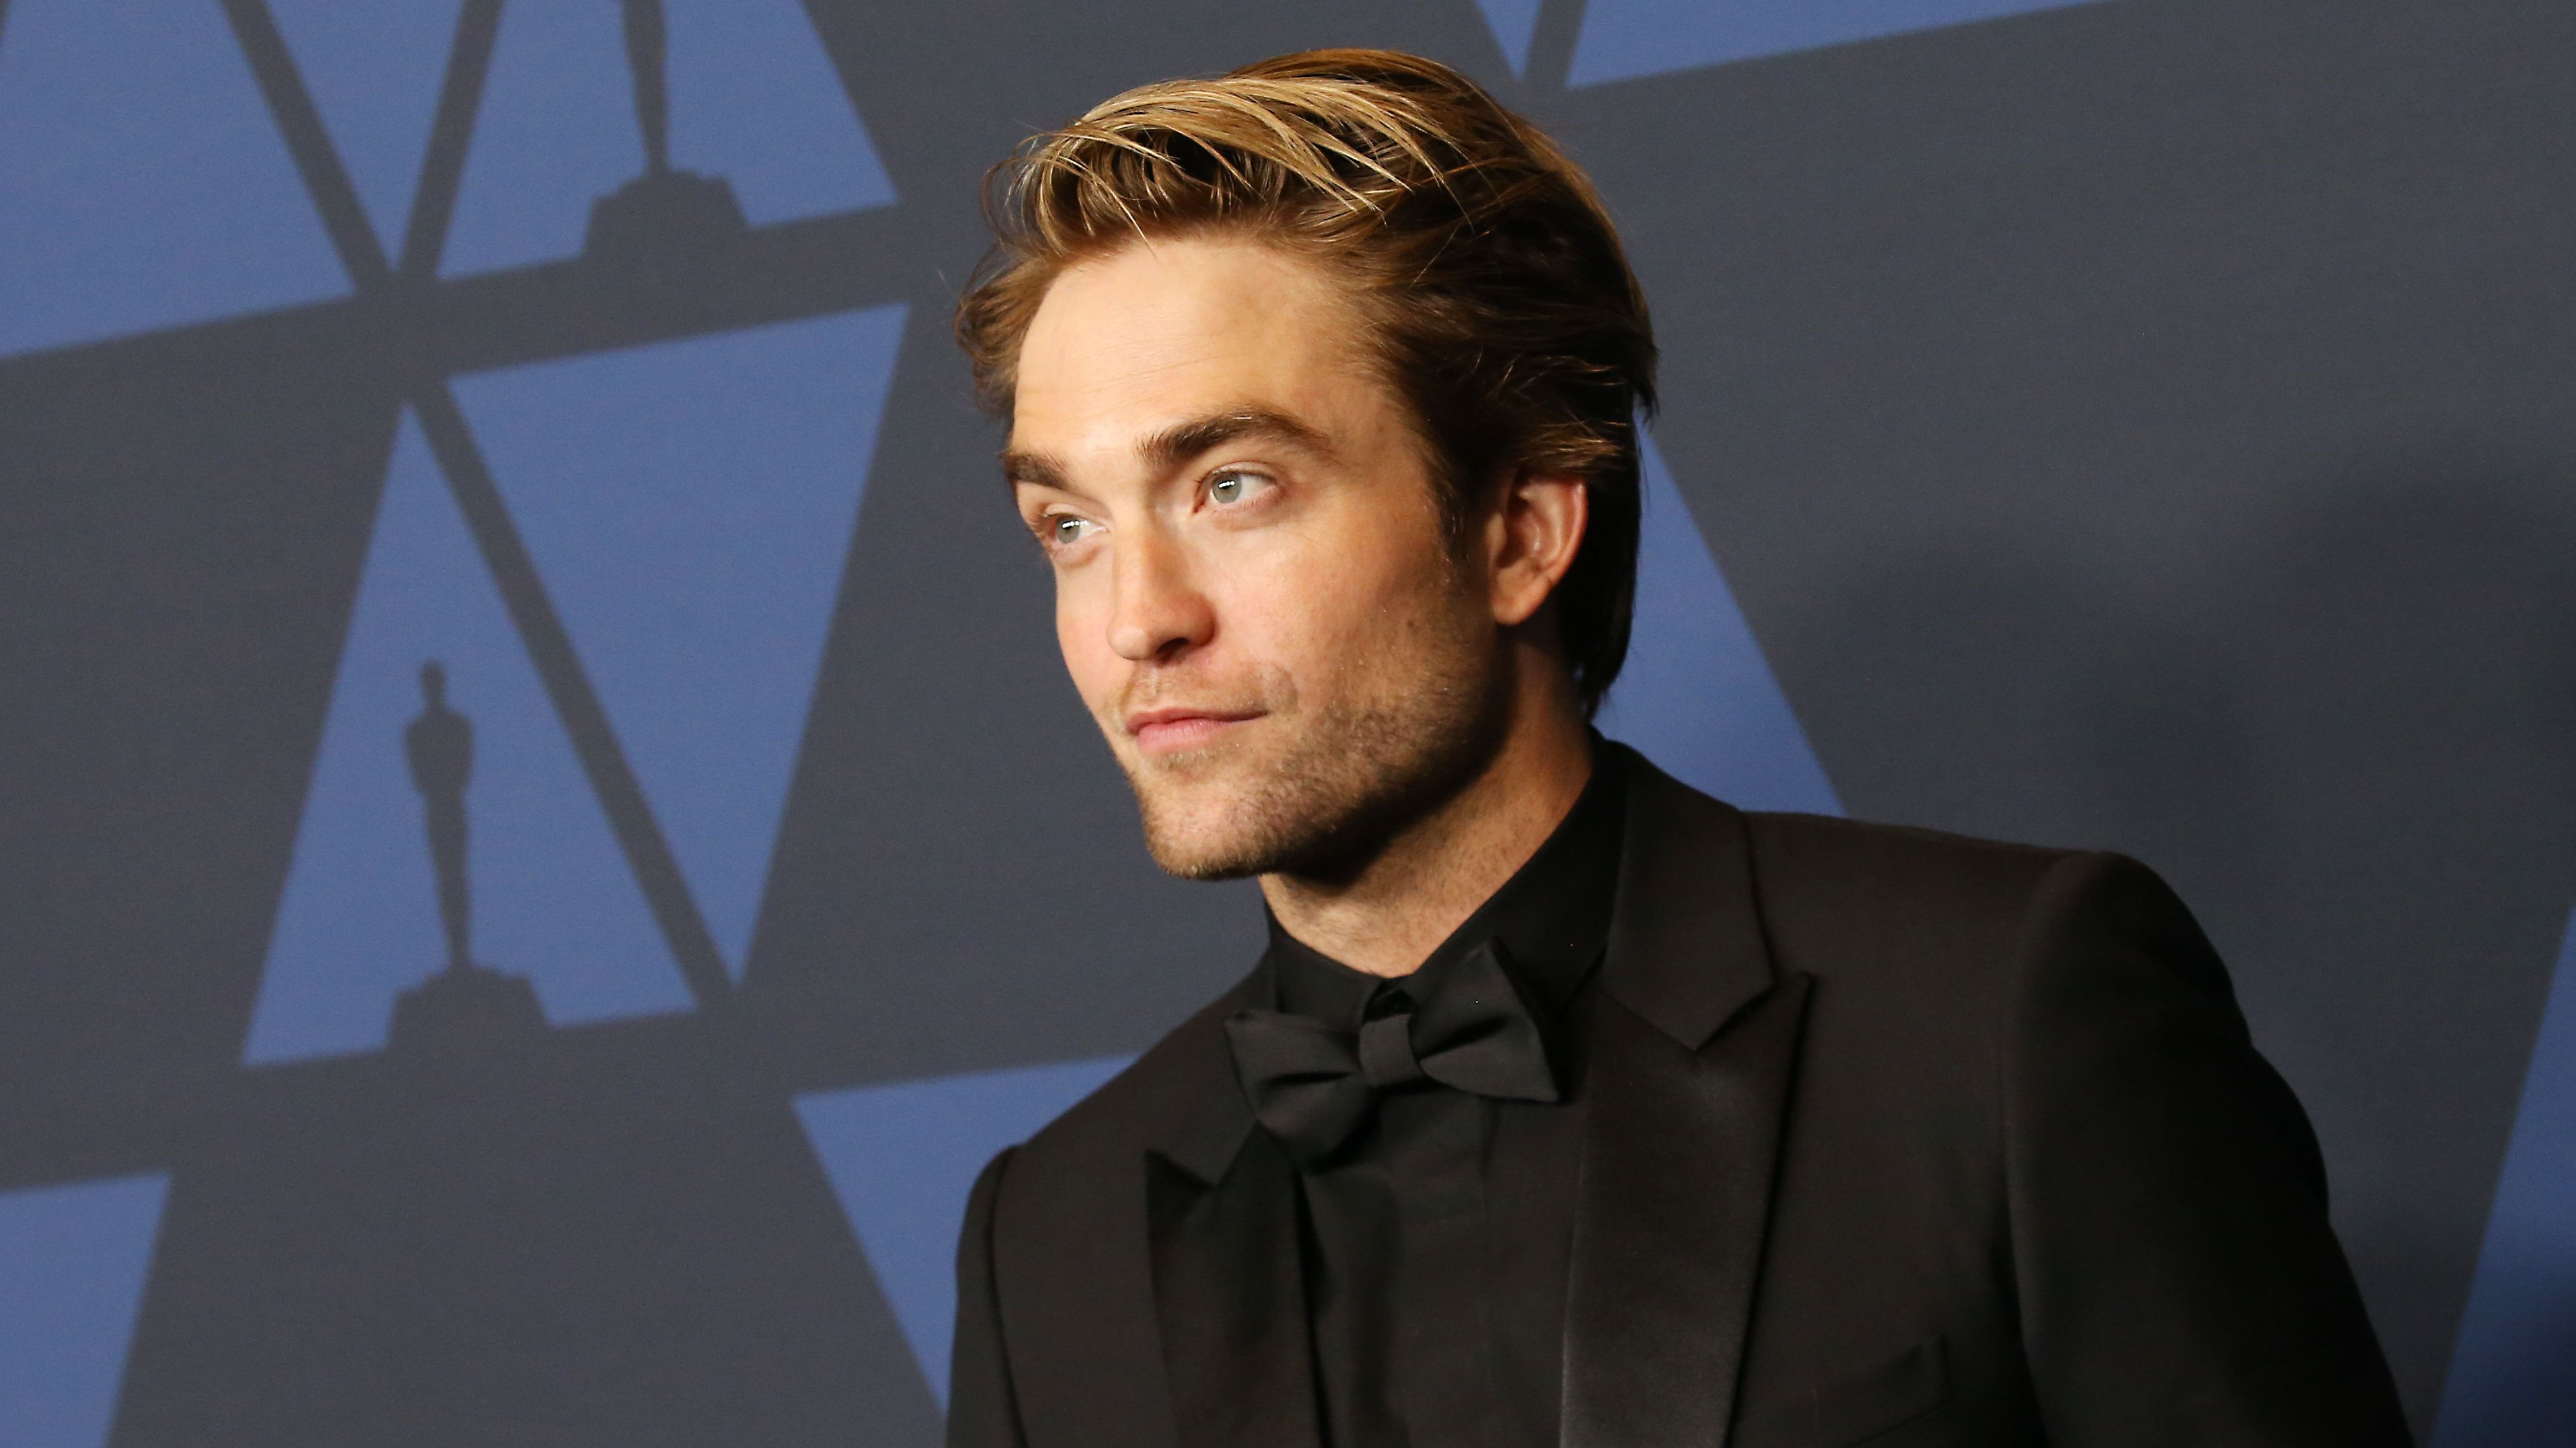 Robert Pattinsont megkérdezték, milyen ennyire vonzónak lenni, elmondta